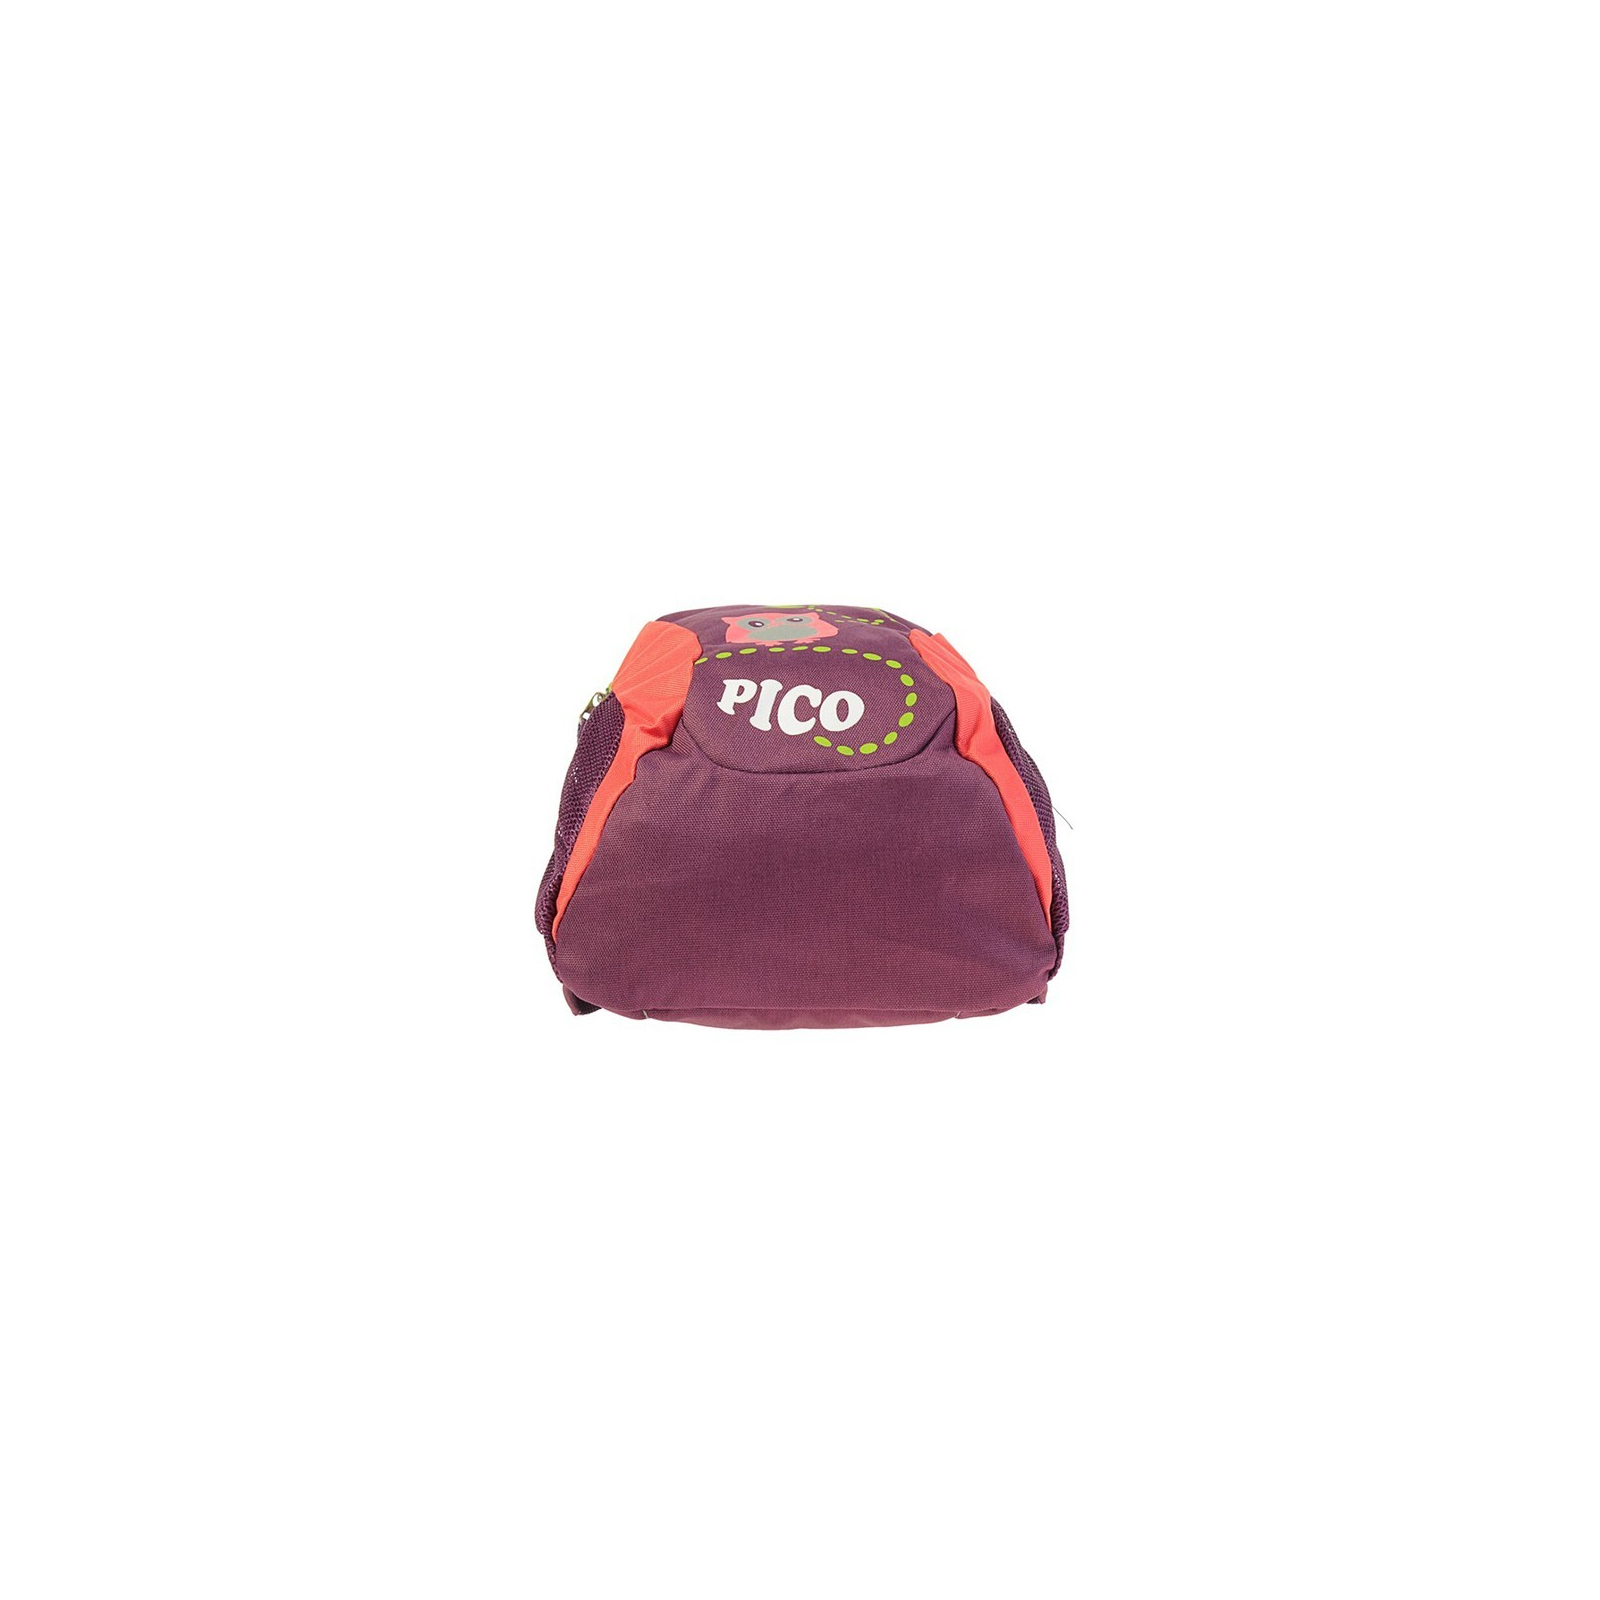 Рюкзак школьный Deuter Pico 5534 plum-coral (36043 5534) изображение 5